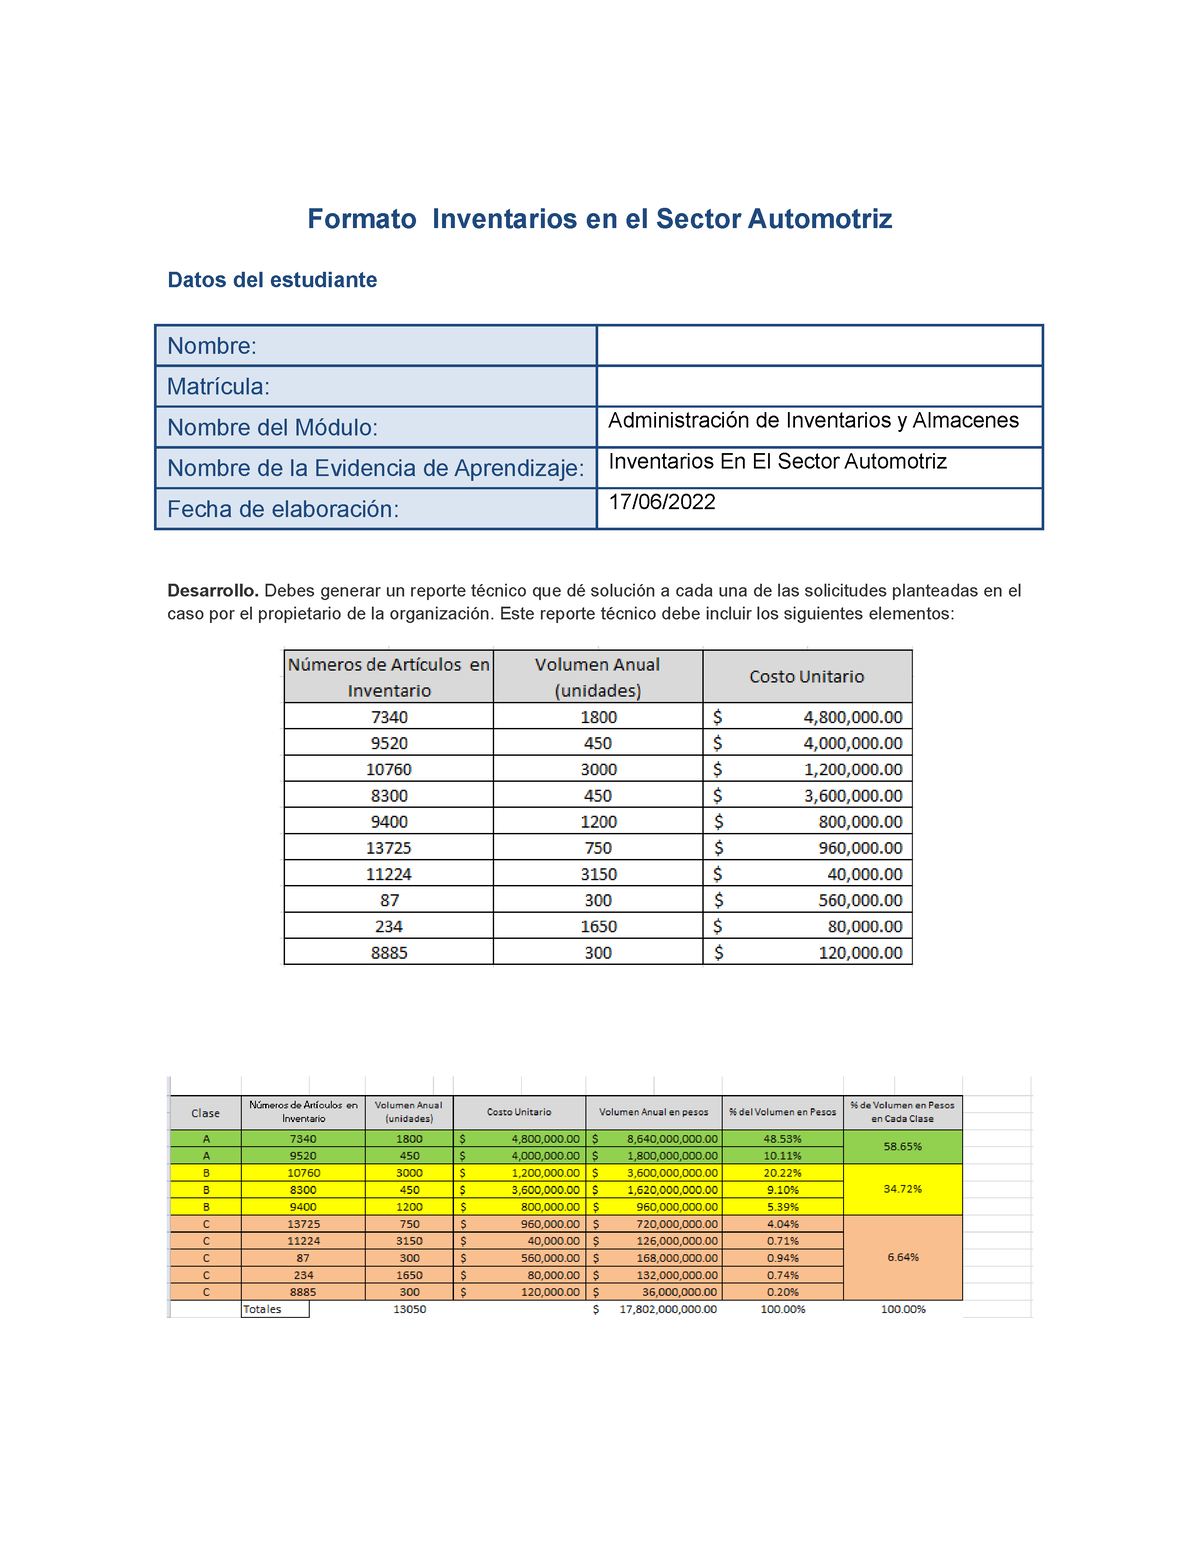 Evidencia Aprenizaje Administracion De Inventarios Formato Inventarios En El Sector Automotriz 0543